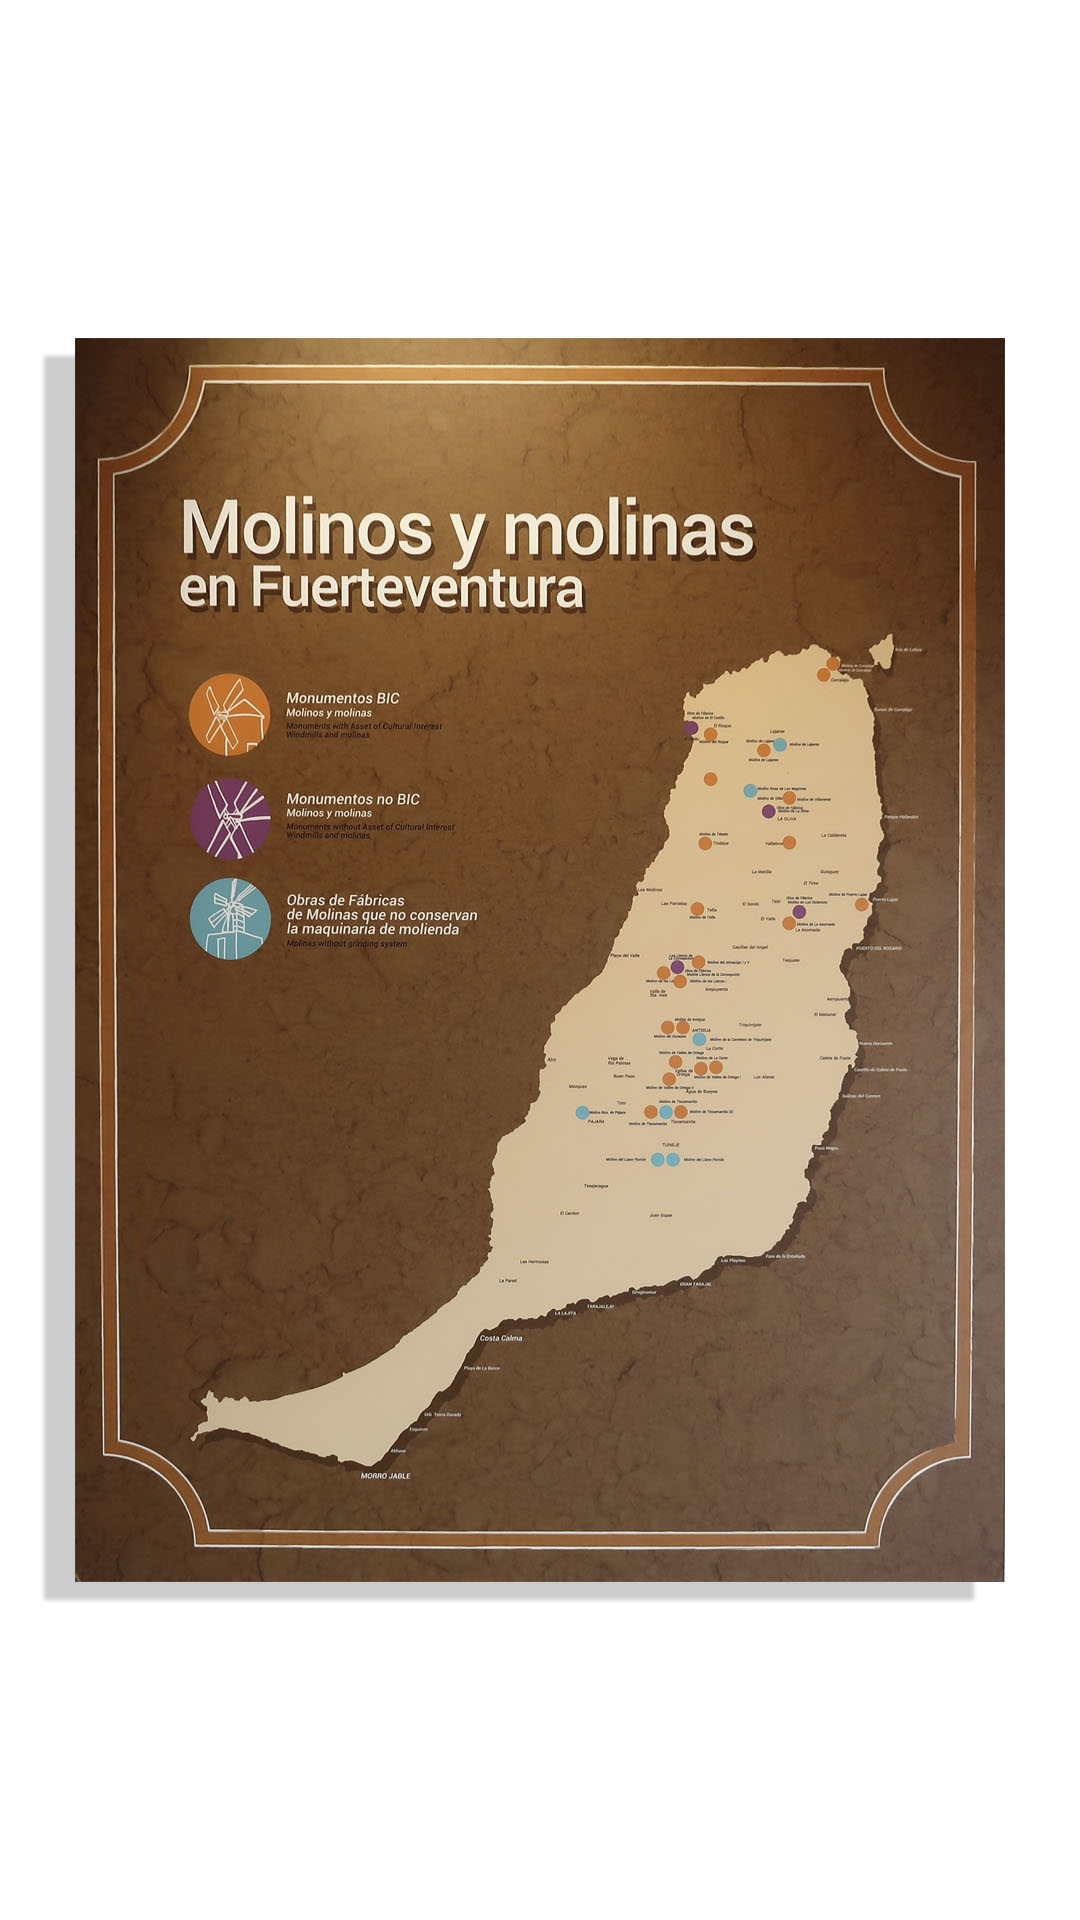 Los Molinos Mühlenmuseum Tiscamanita Fuerteventura – Los Molinos Centro de Interpretación.